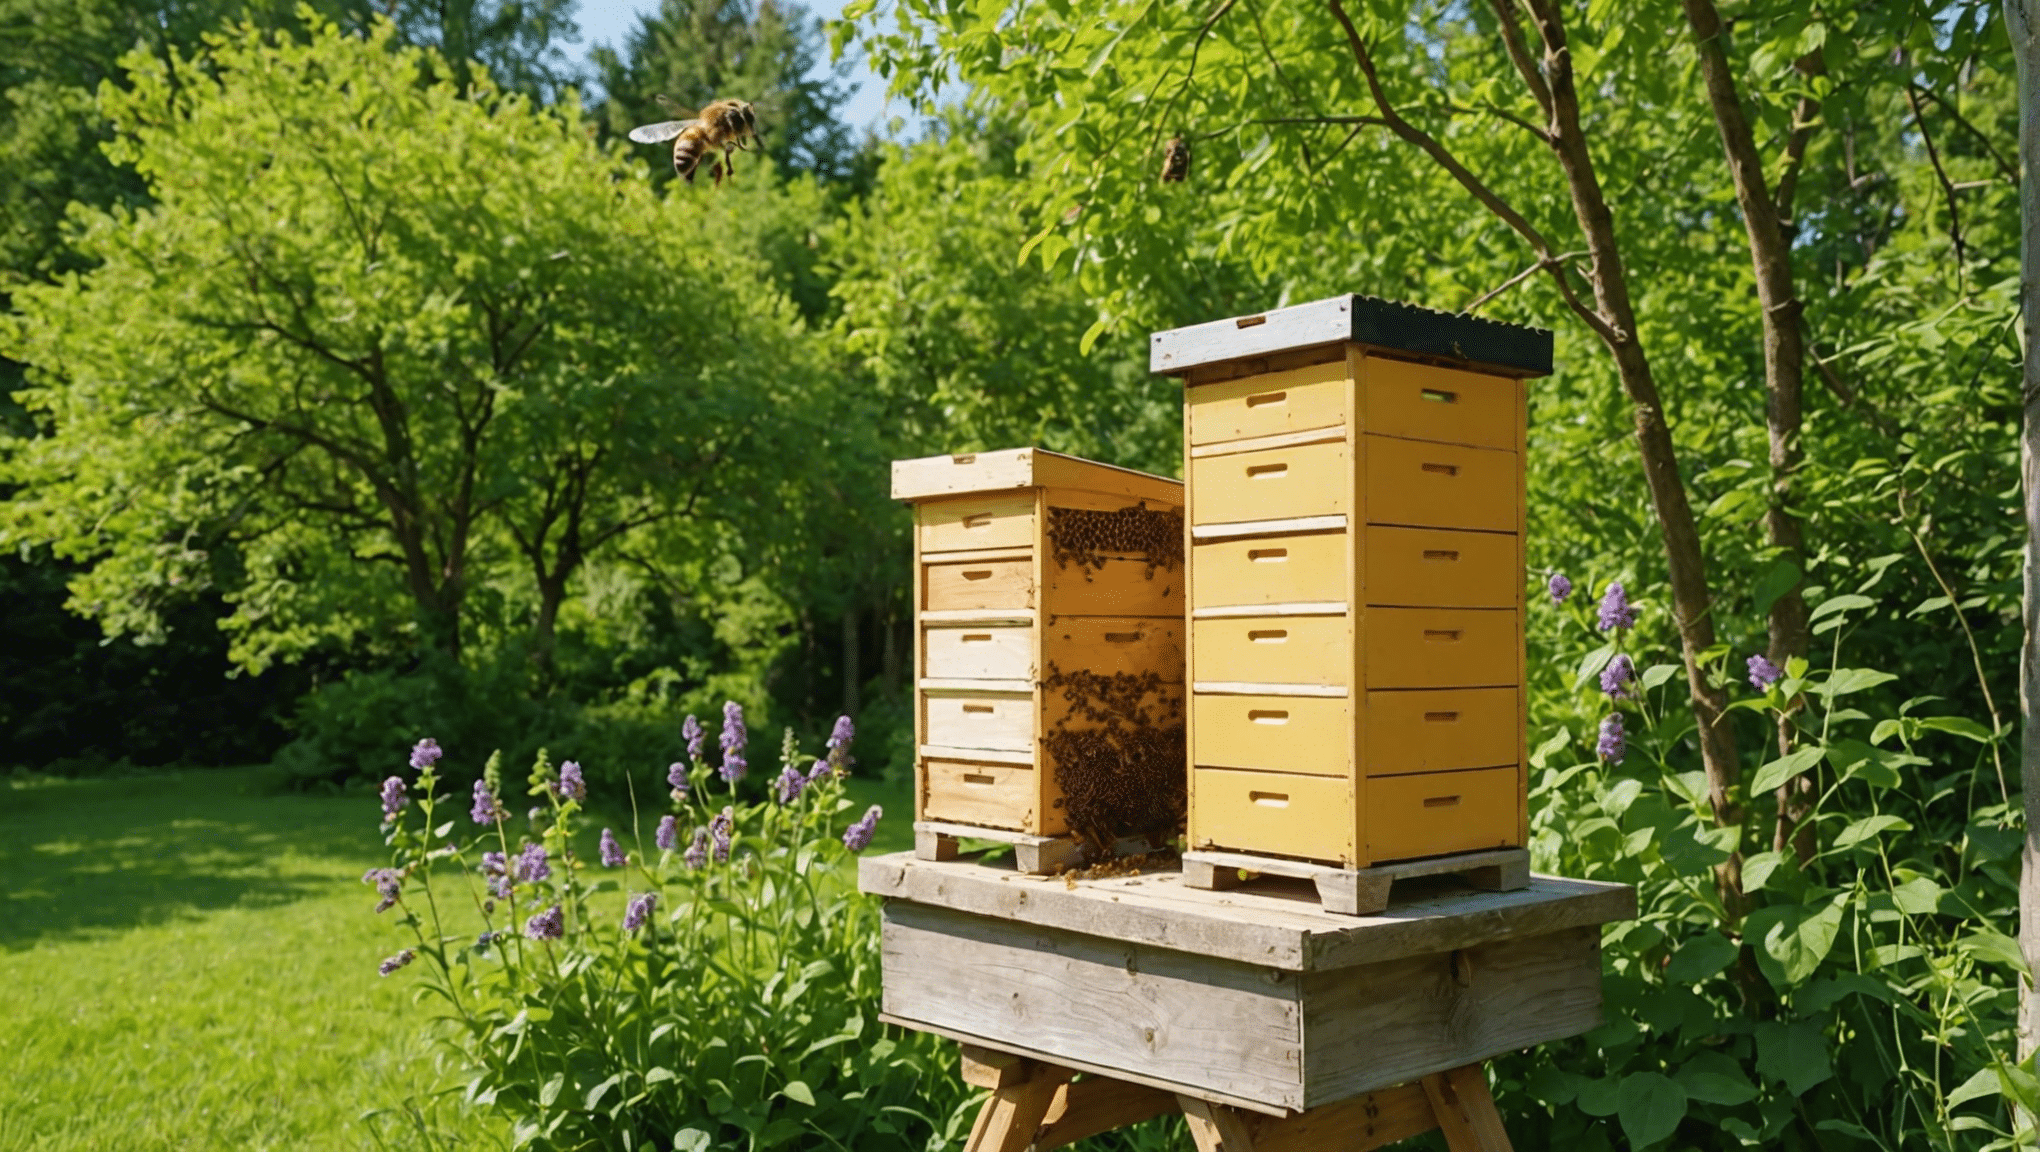 trouvez tout ce que vous devez savoir sur les ruches naturelles, y compris comment elles sont fabriquées, leurs avantages et comment en prendre soin dans ce guide complet.